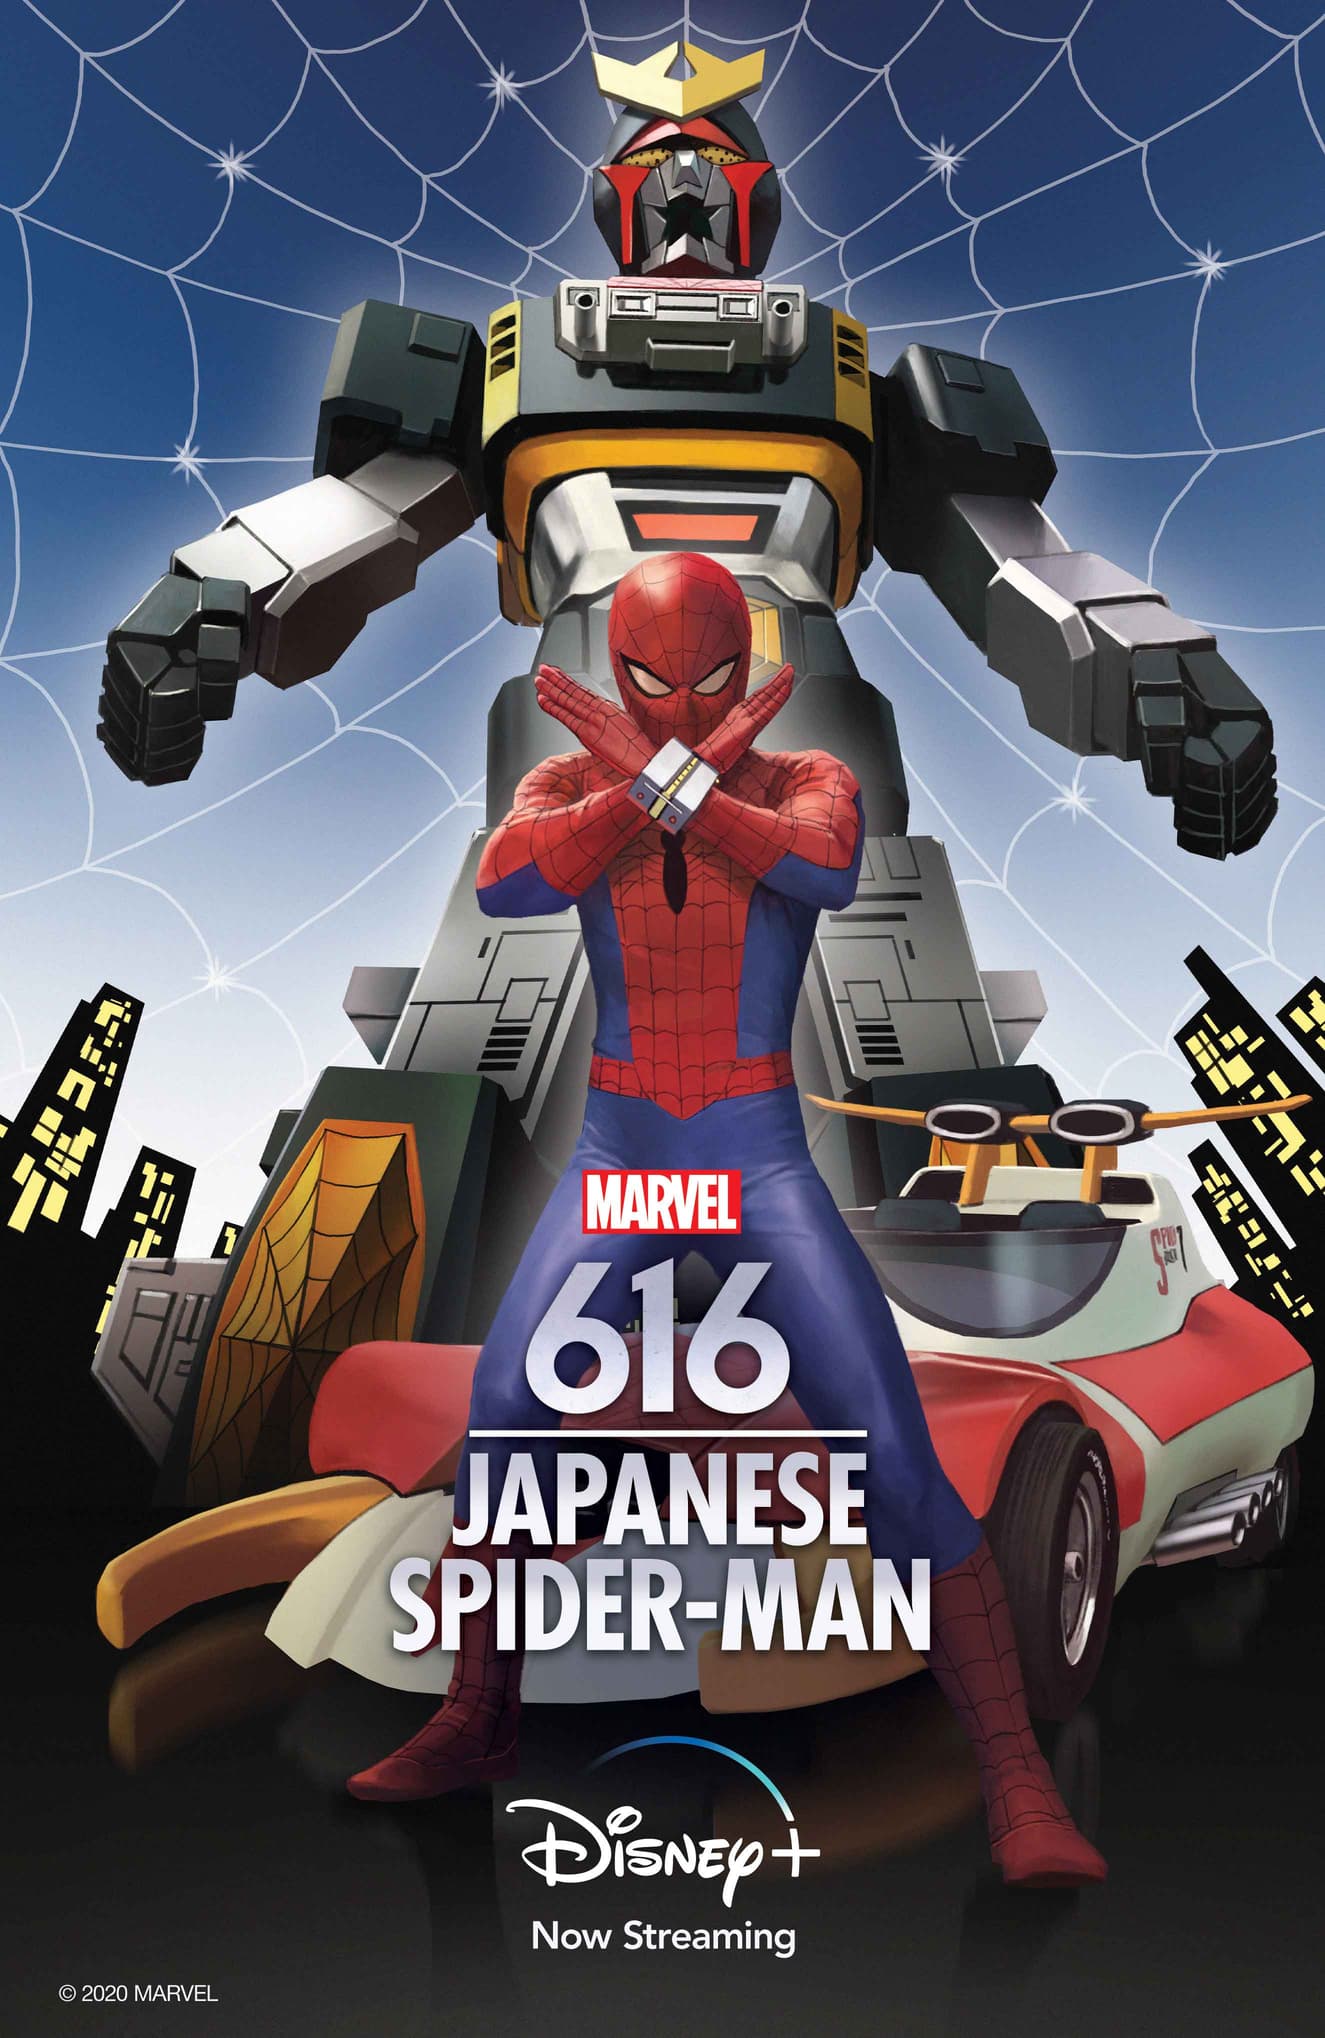 Marvel's 616 Japanese Spider-Man